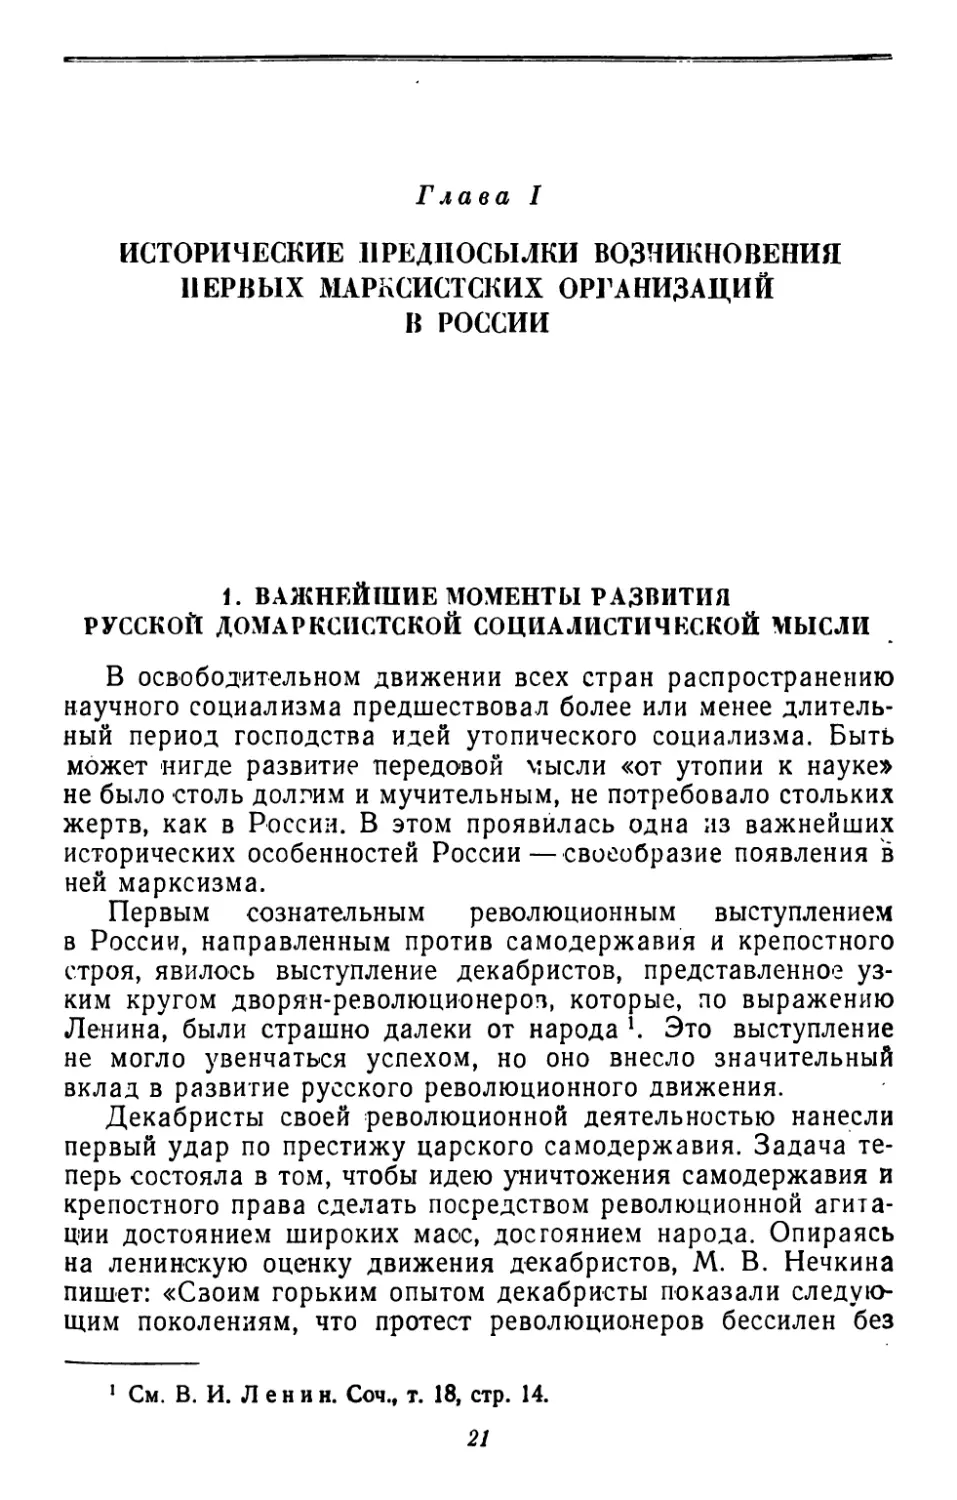 Глава I. Исторические предпосылки возникновения первых марксистских организаций в России